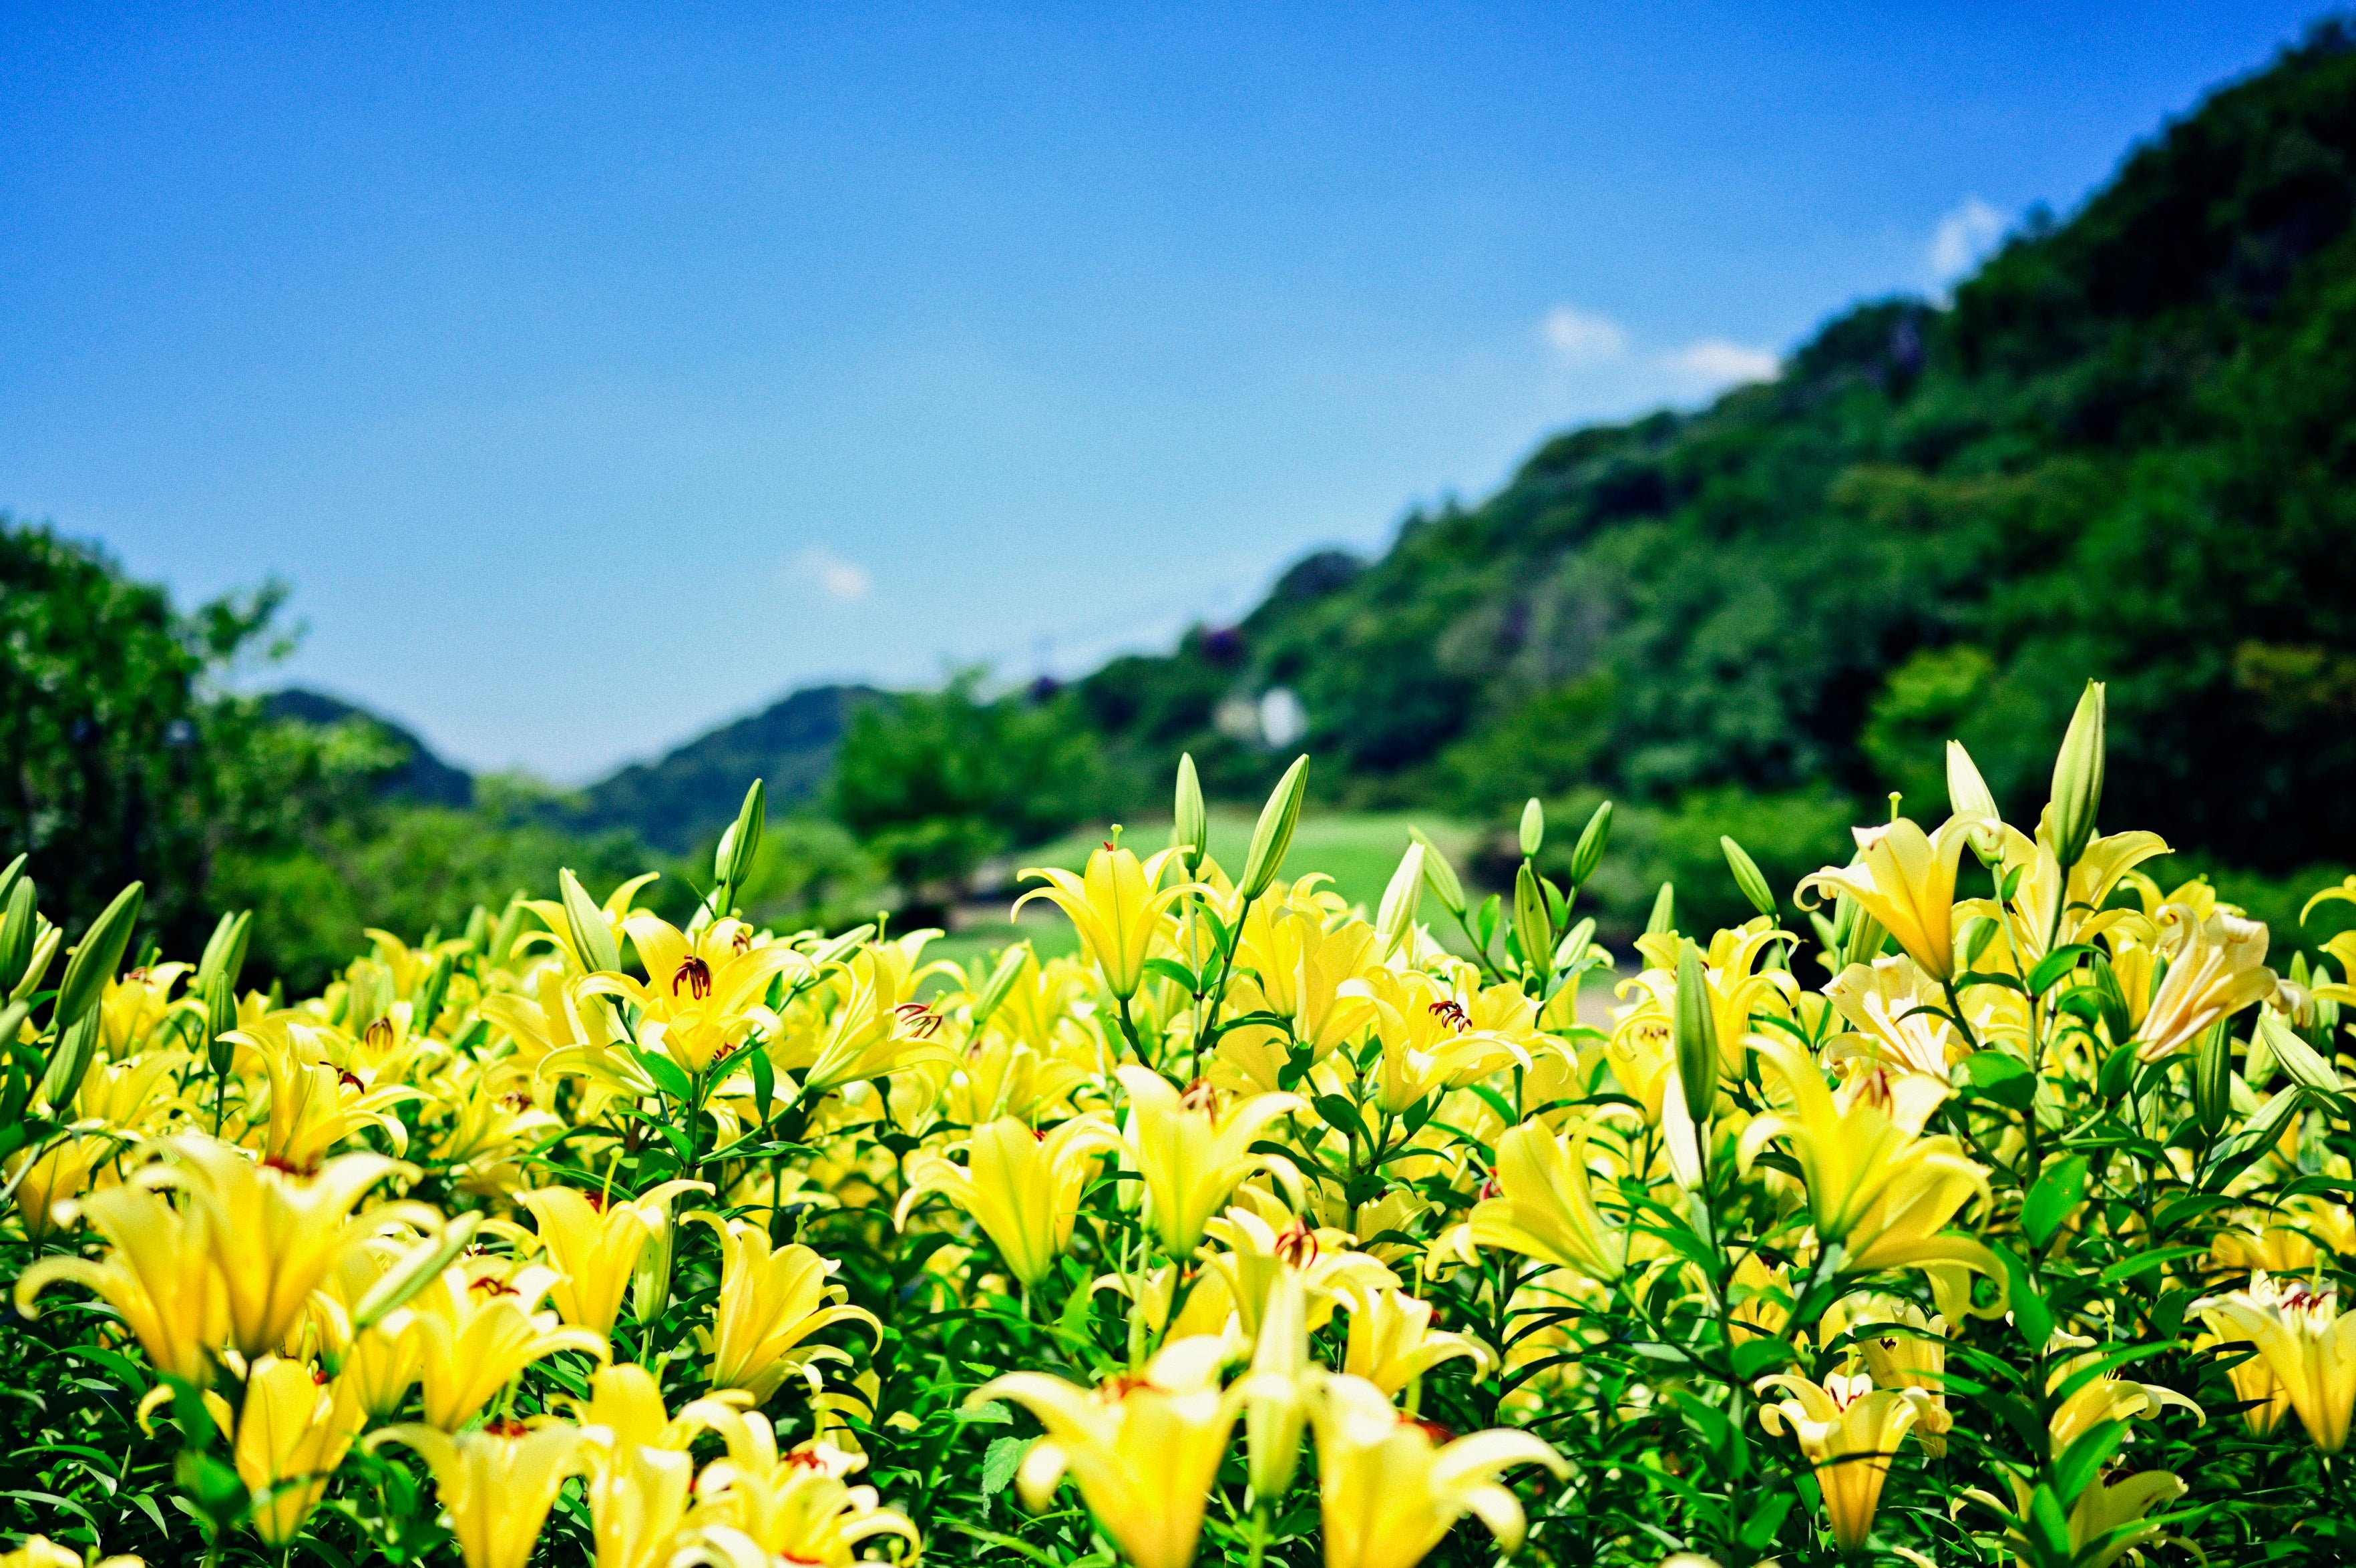 撮影スポットで人気の黄色、ピンクに一面が彩る初夏のユリ花畑。山上のリゾート”神戸布引ハーブ園”では「ユリ...